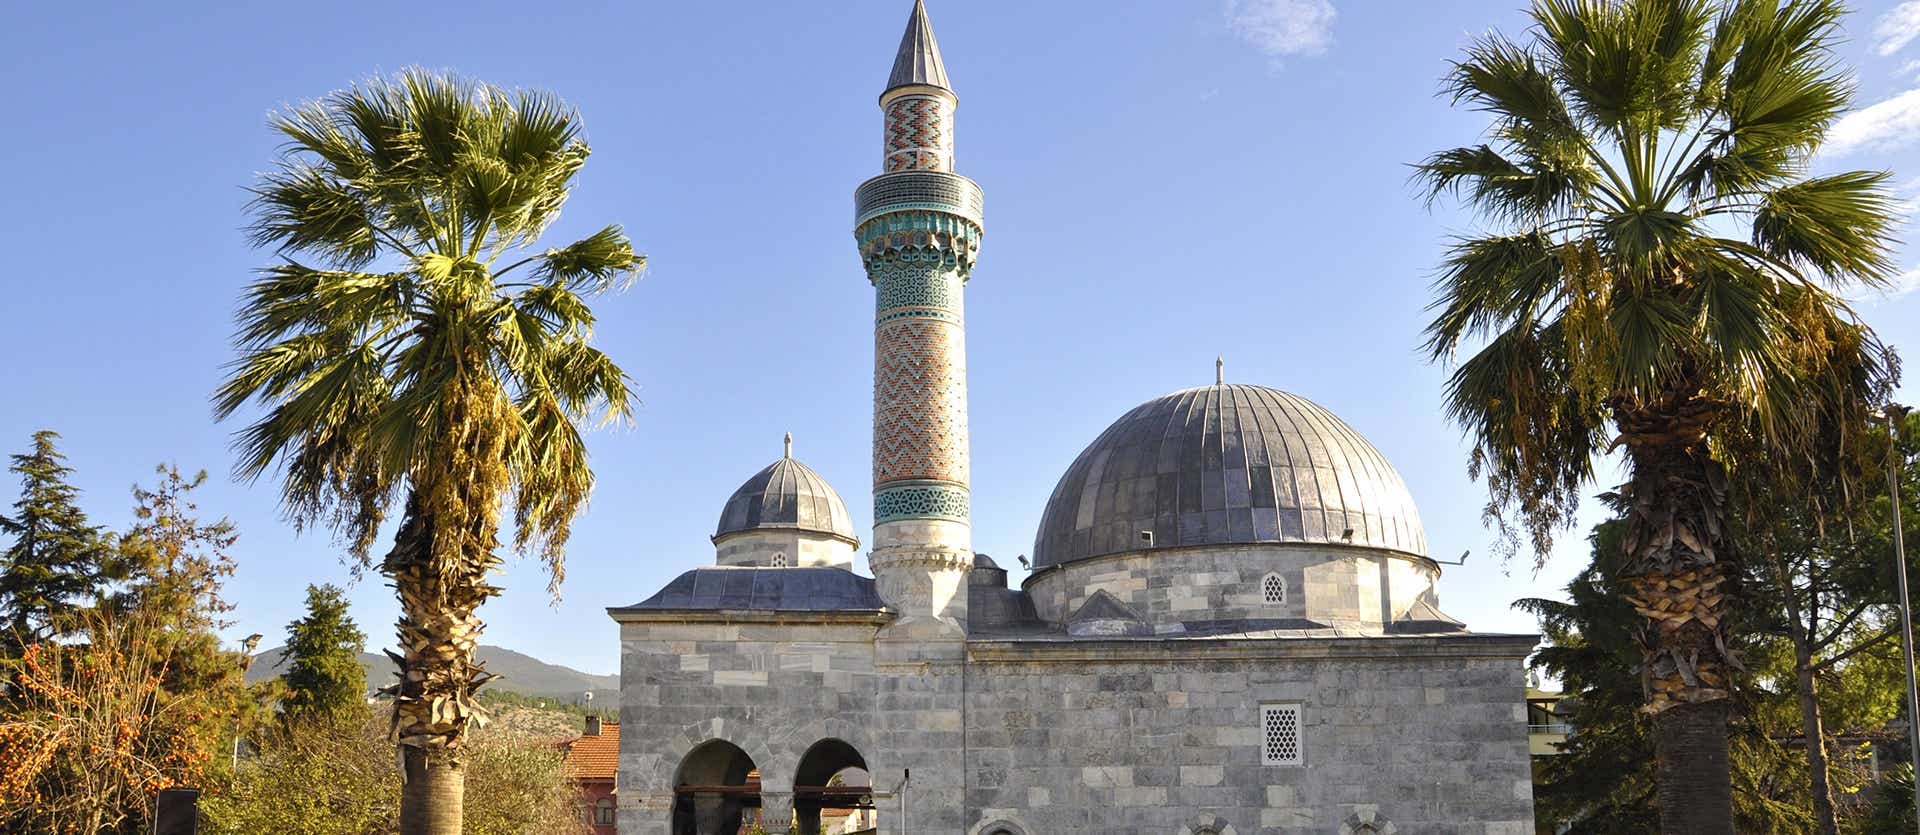 Green Mosque of Iznik <span class="iconos separador"></span> Bursa 